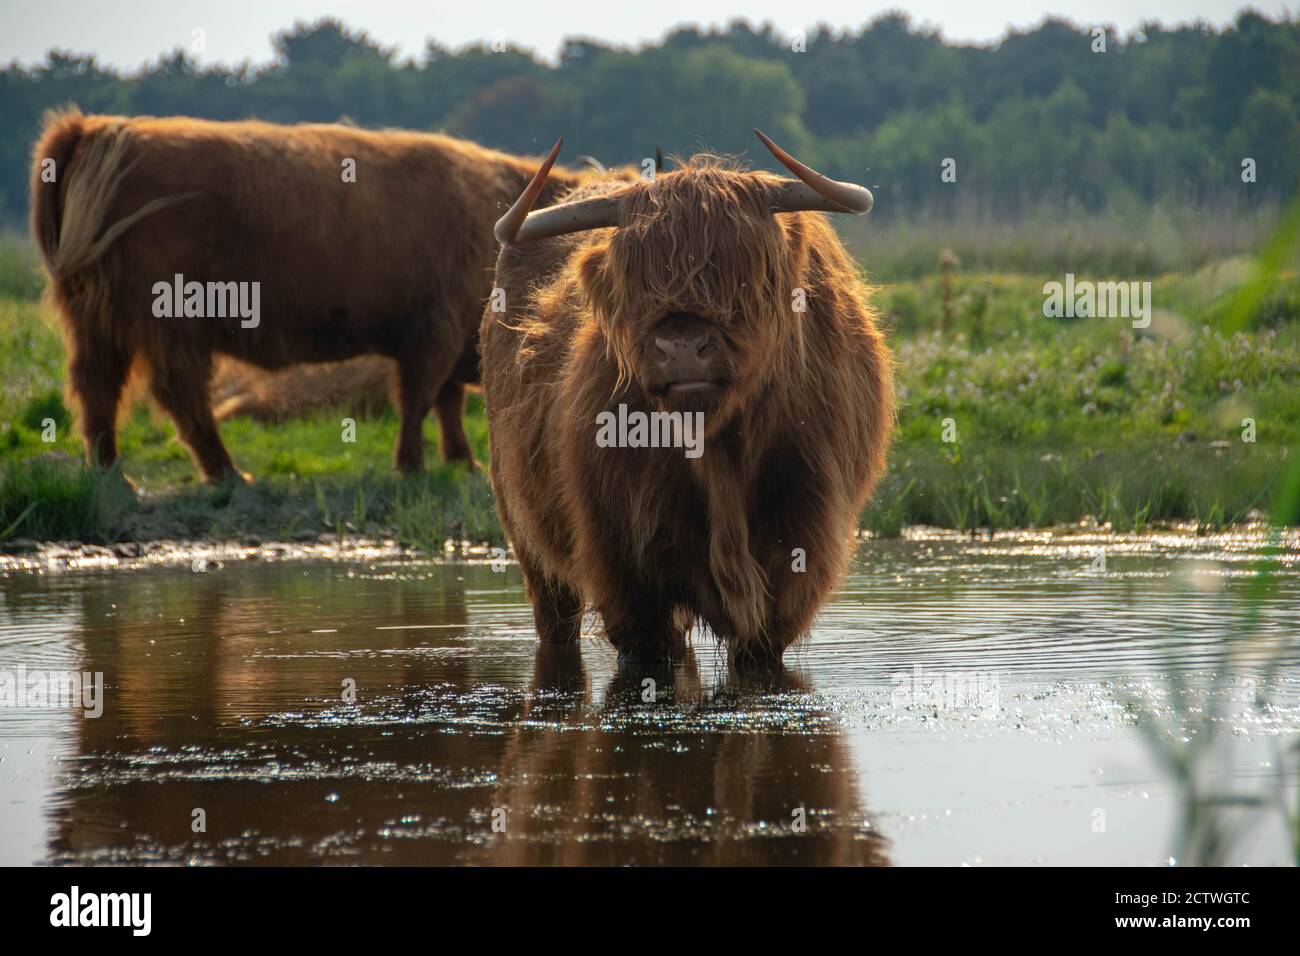 La vache Highlander appréciant l'eau dans l'étang, derrière le plus fort appelé donkere duinen aux pays-bas. Banque D'Images